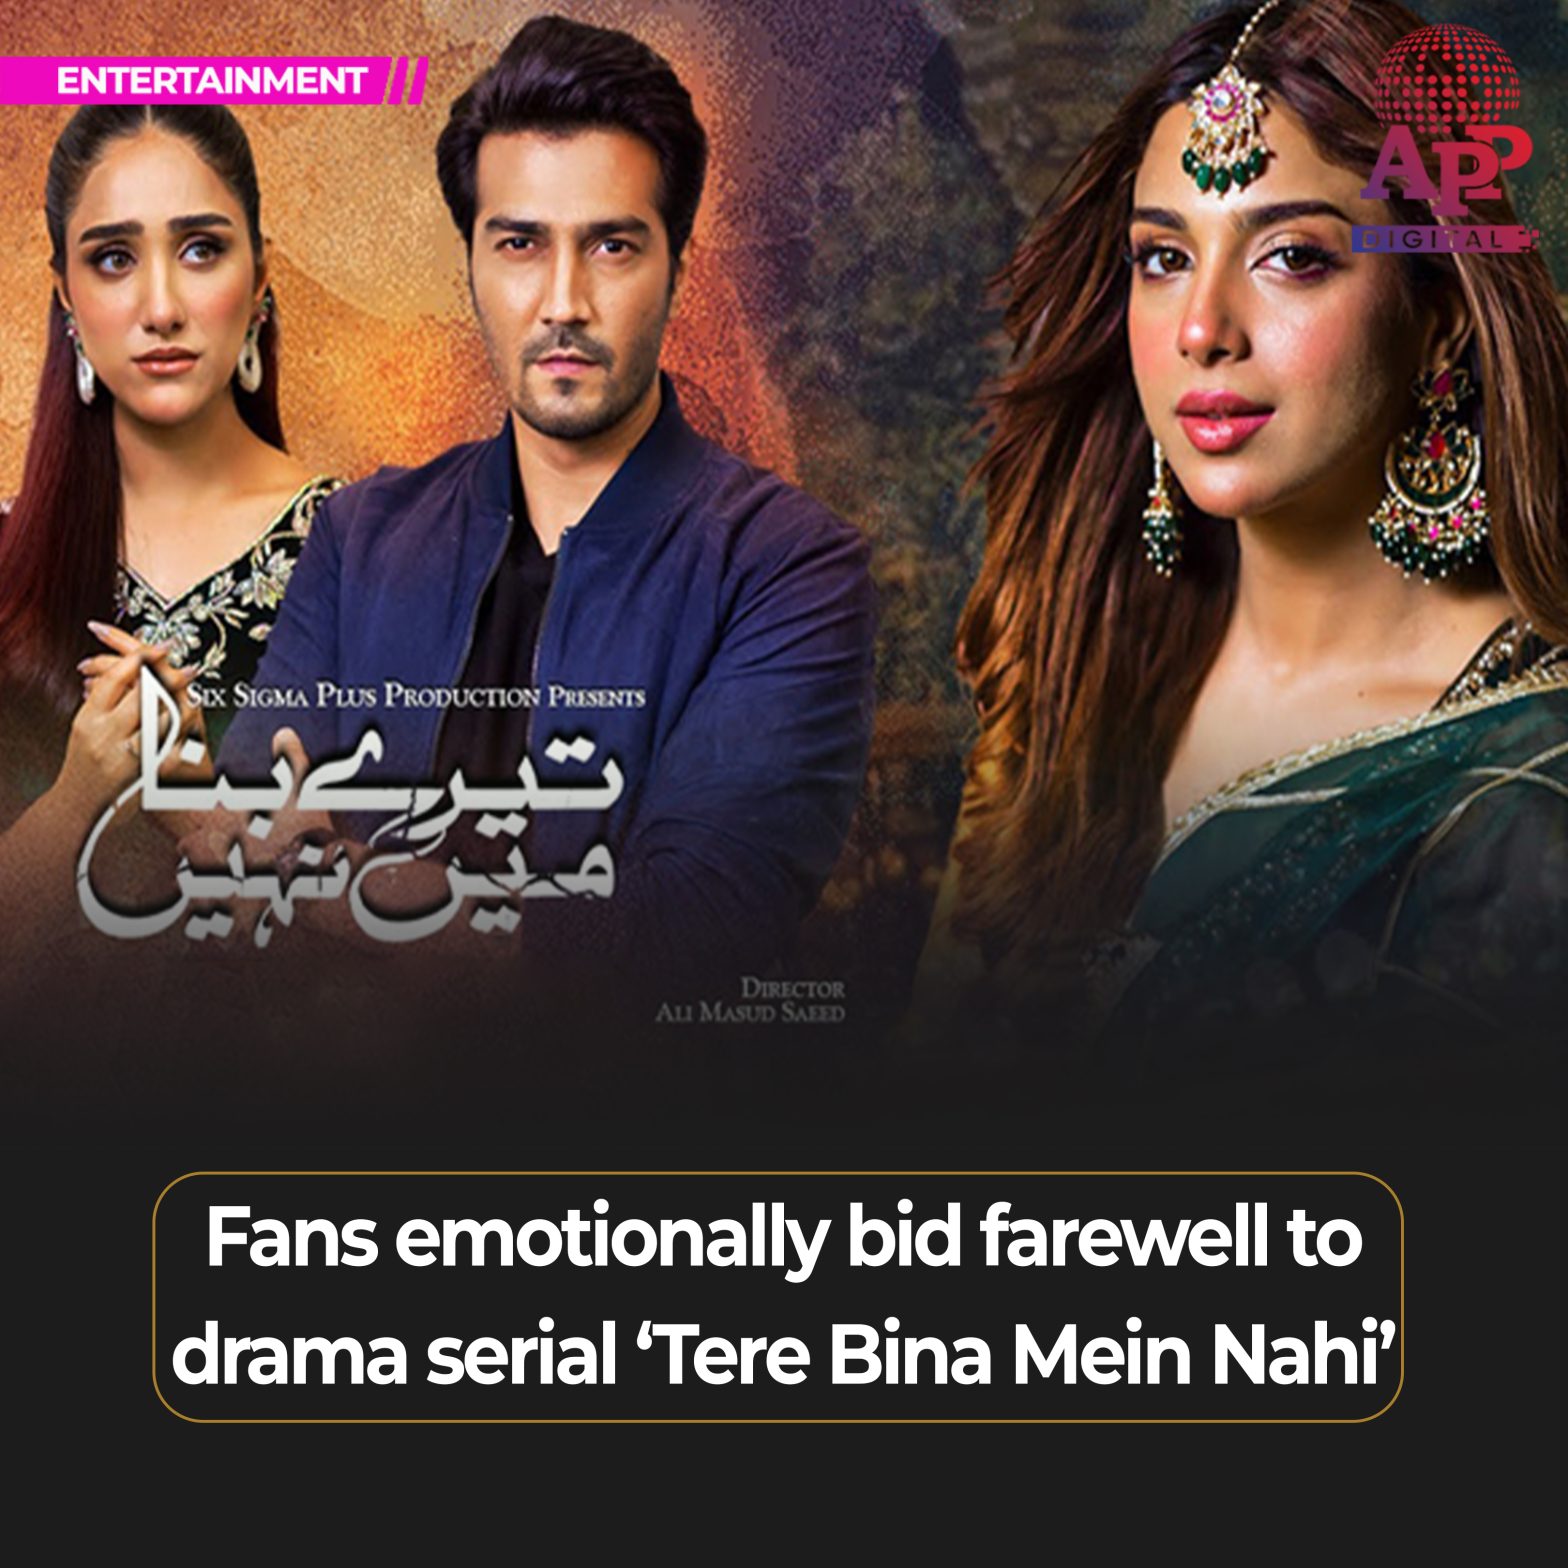 ‘Tere Bina Mein Nahi’ finale leaves viewers emotional